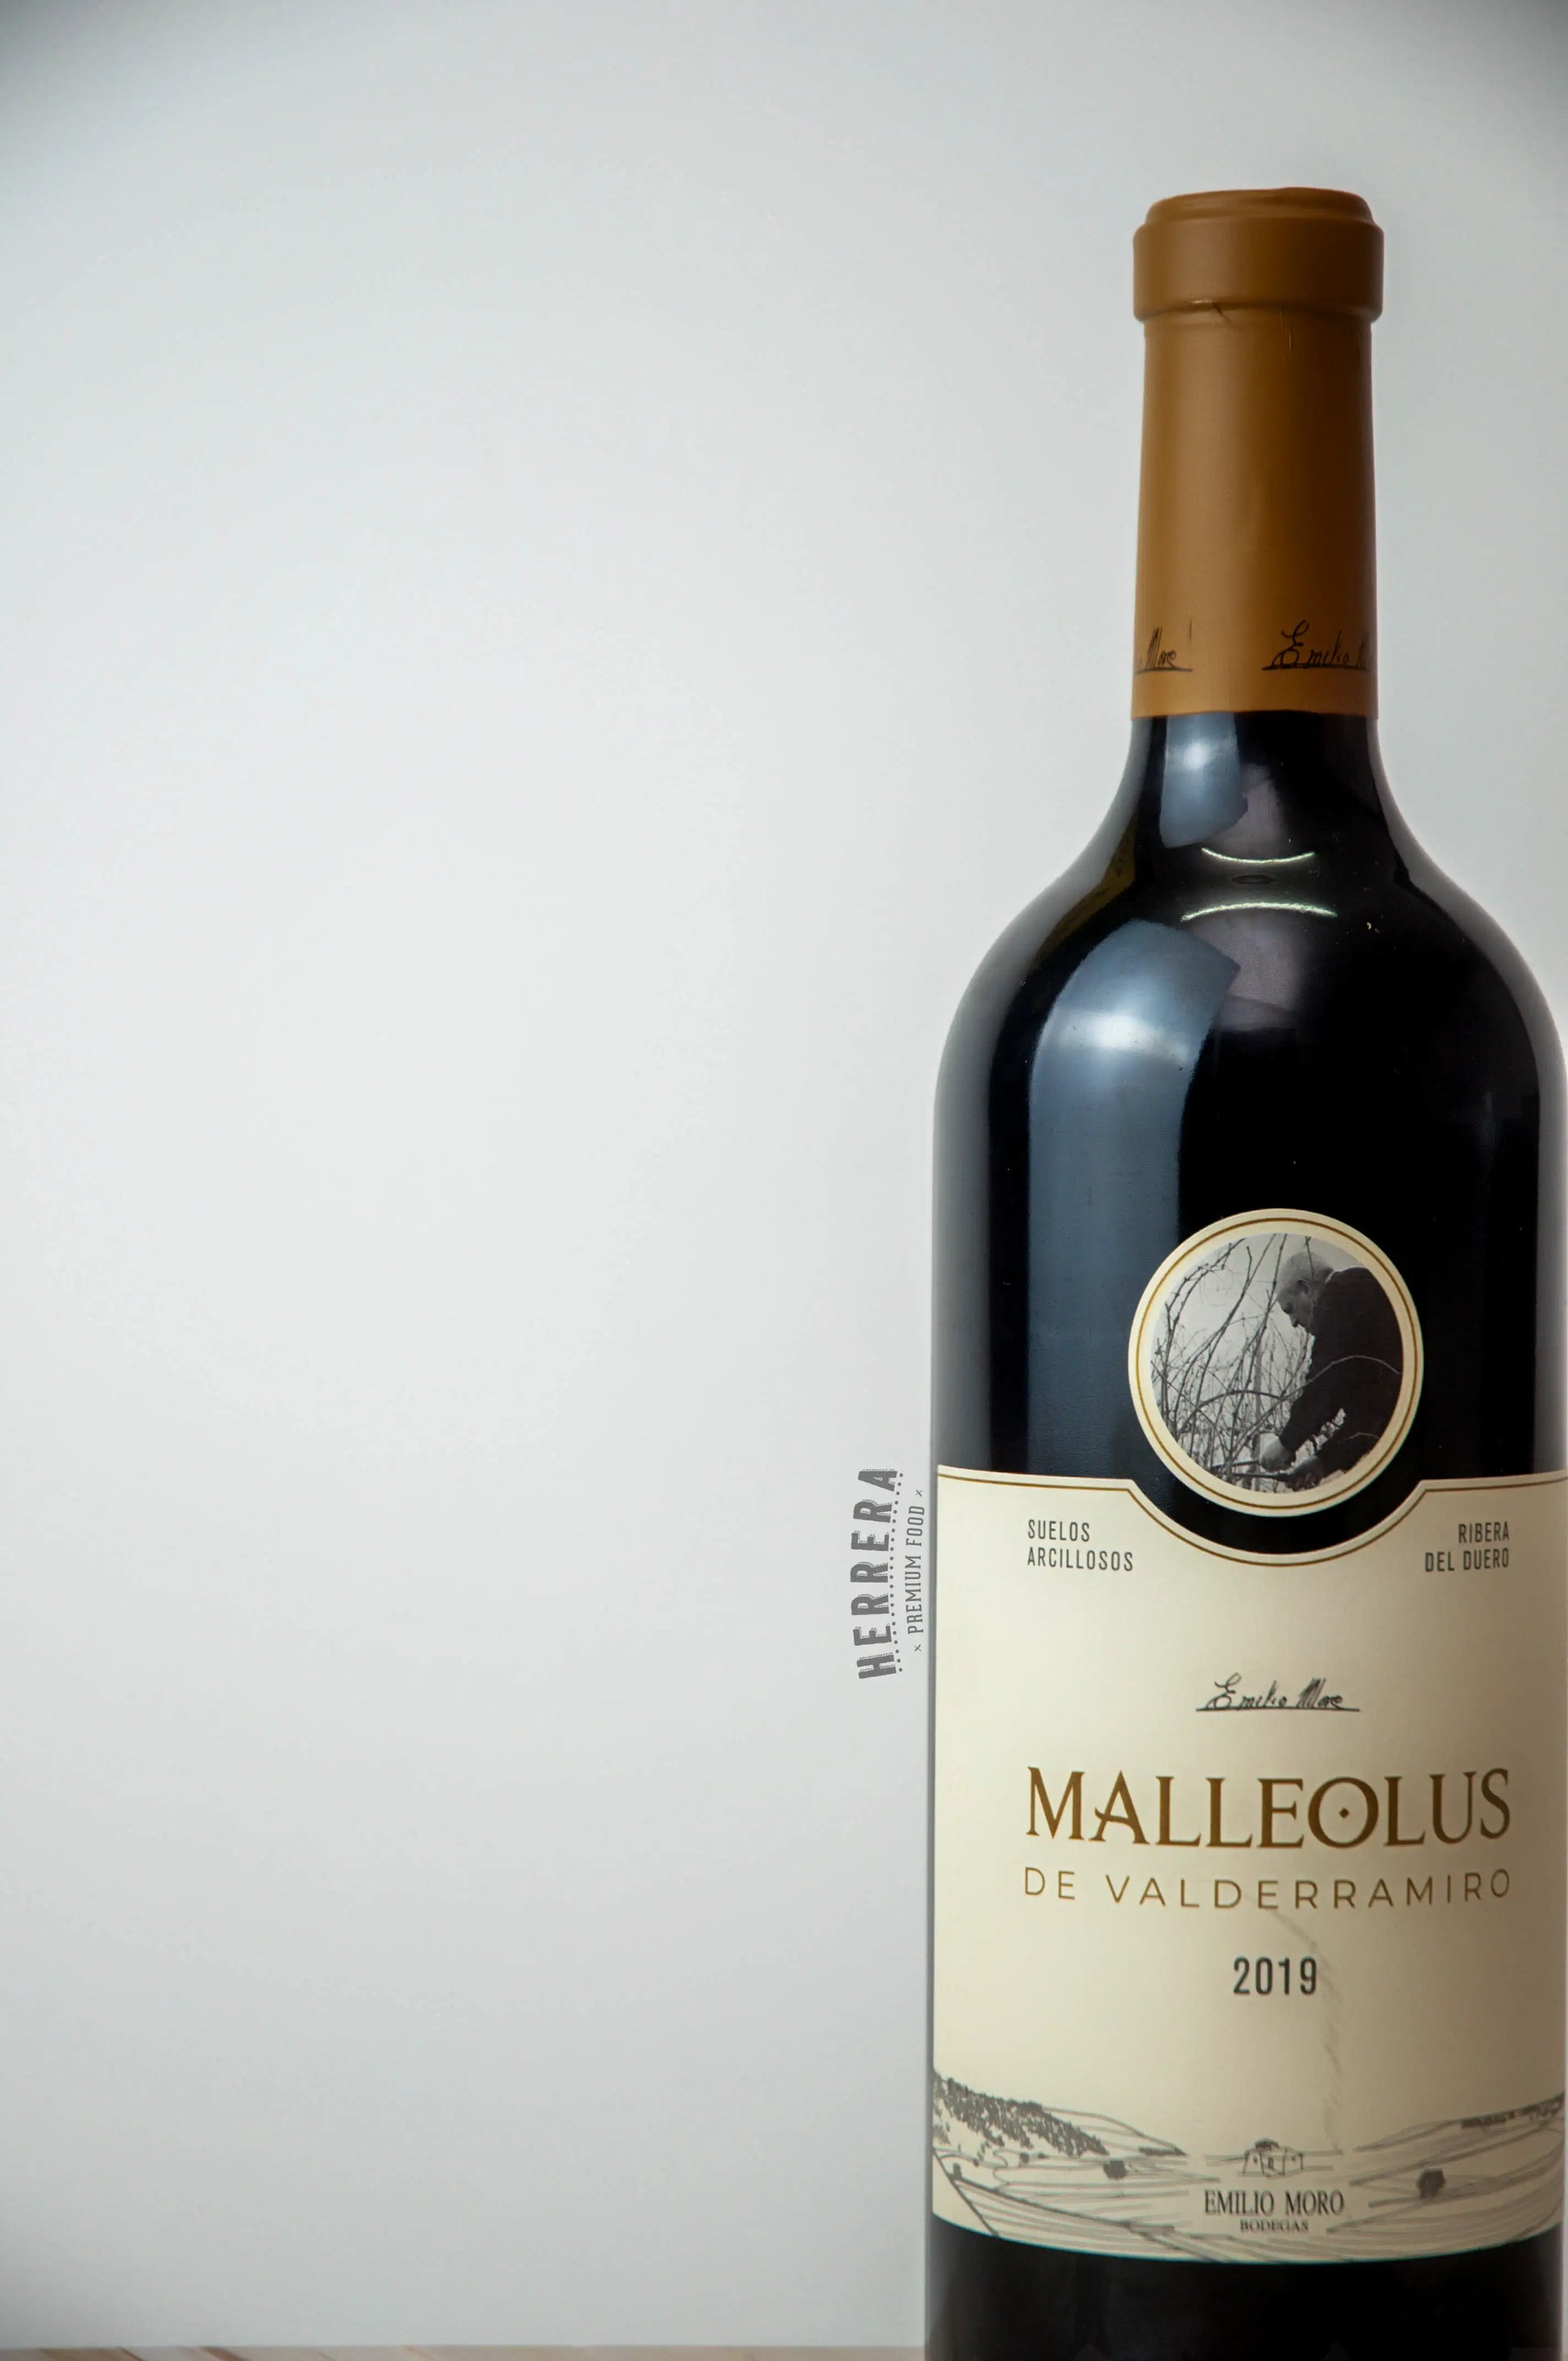 Malleolus de Valderramiro: El Vino Tinto que Marca la Diferencia.